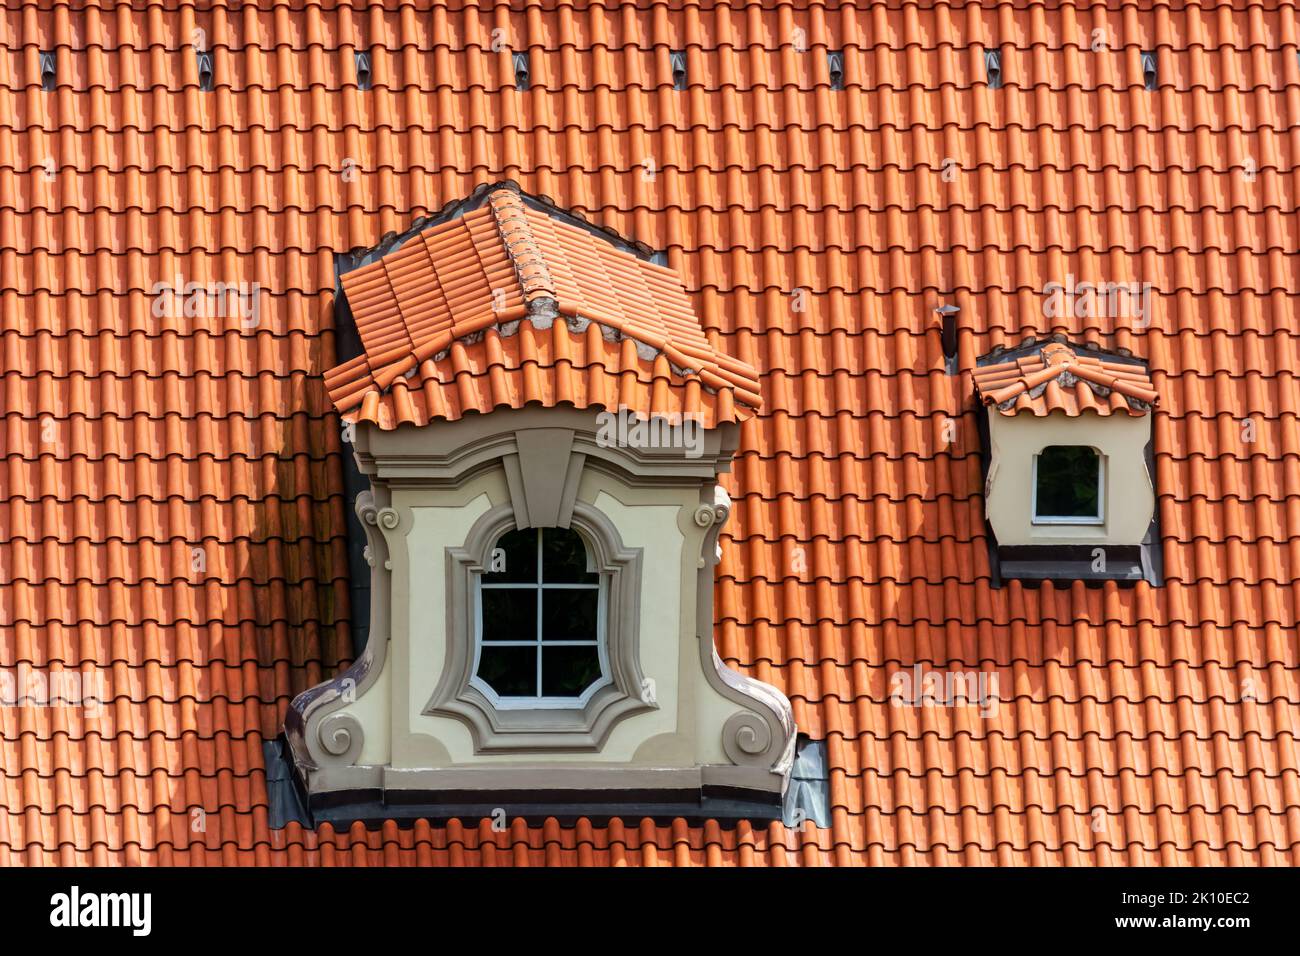 Petite mezzanine avec une fenêtre figurée sur un toit en tuiles rouges dans la ville tchèque de Prague. De la série fenêtre du monde. Banque D'Images